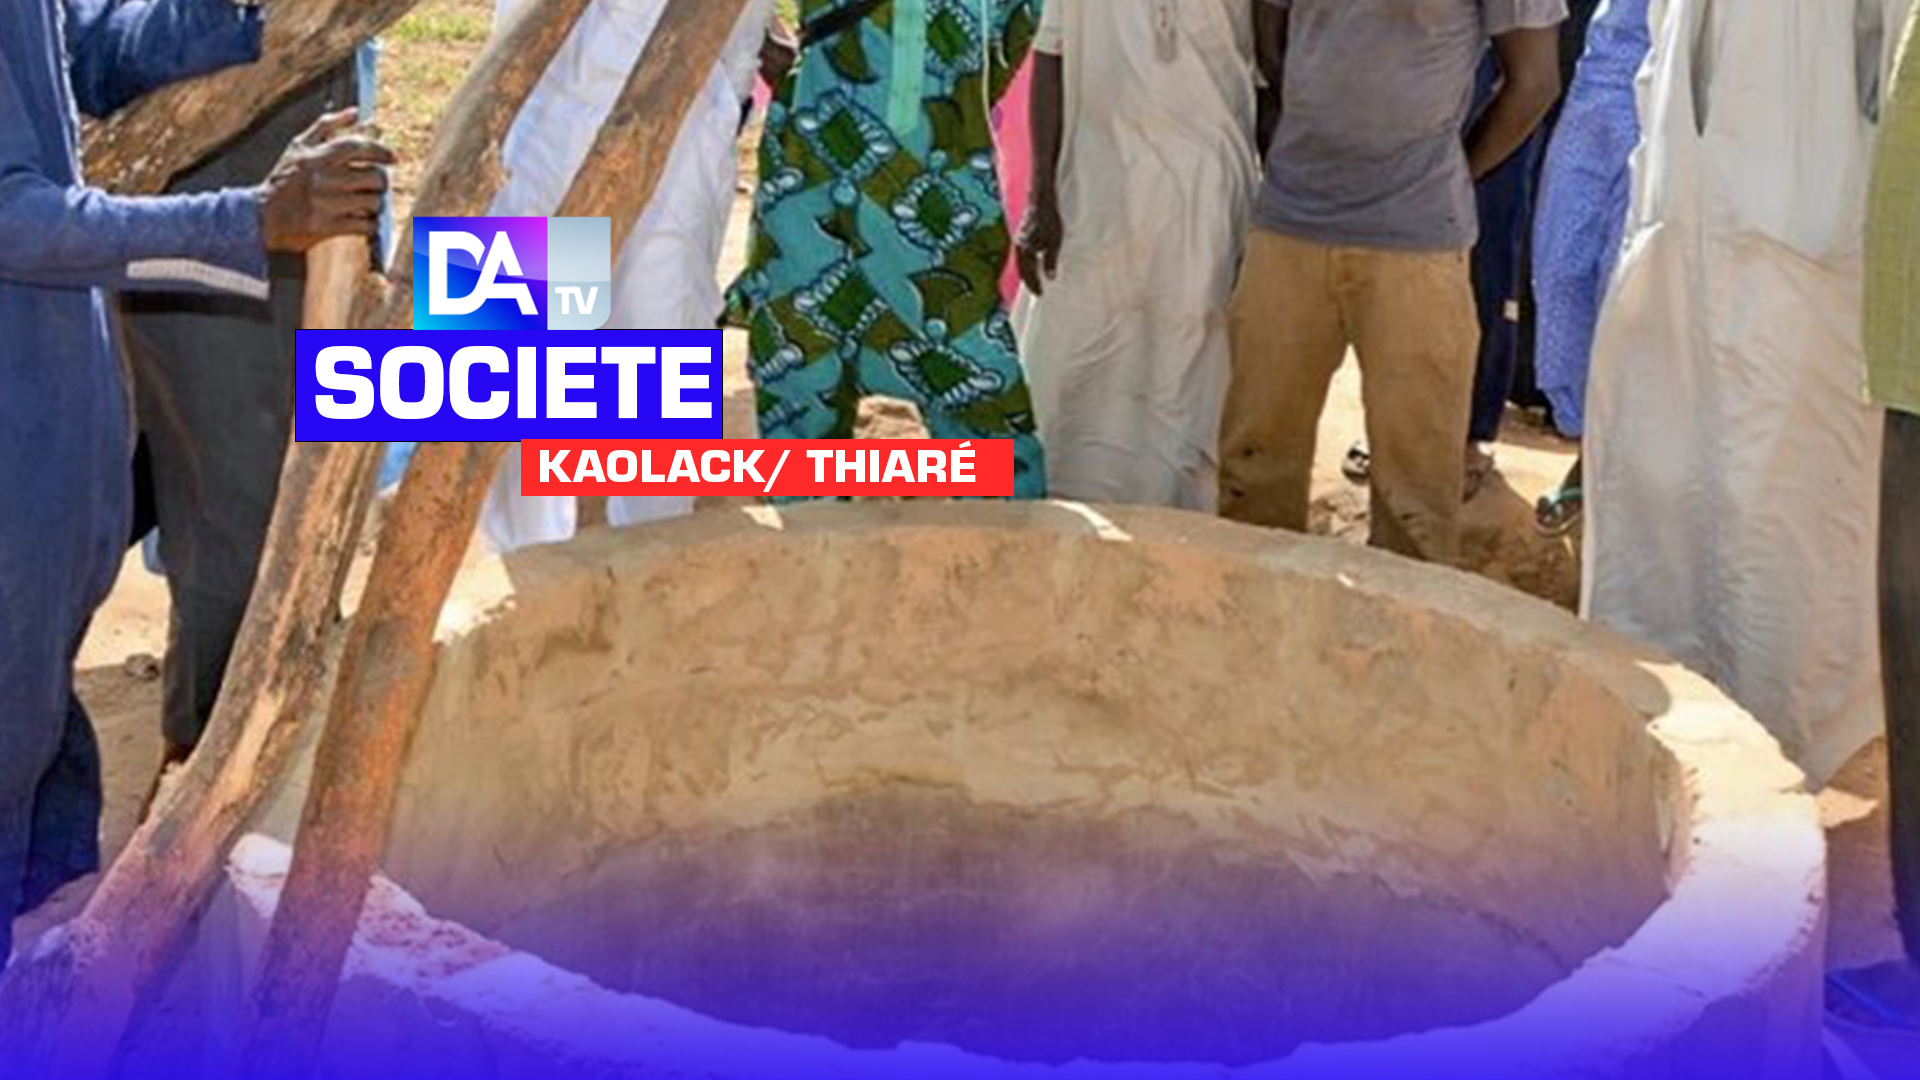 Département de Kaolack/ Thiaré: Une dame âgée de 32 ans se donne la mort en se jetant dans un puits